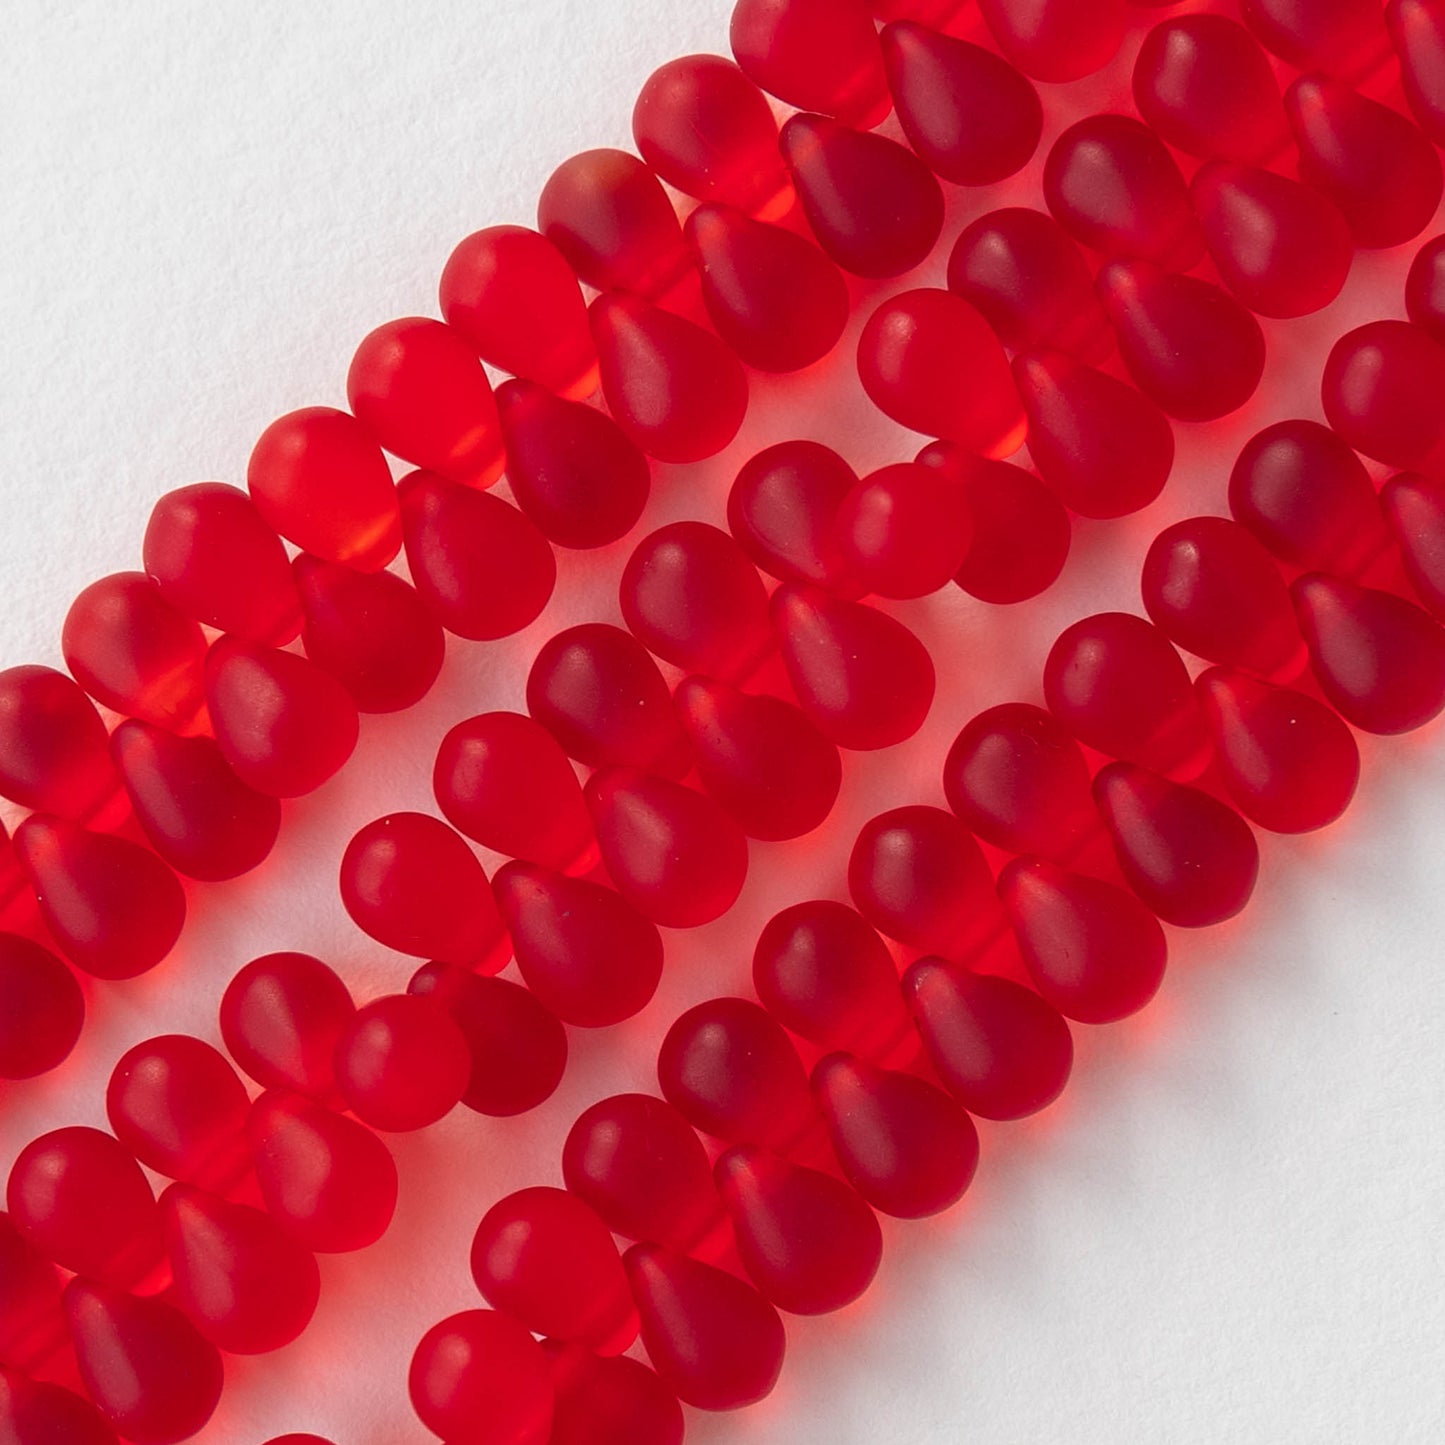 4x6mm Glass Teardrop Beads - Red Matte - 100 Beads